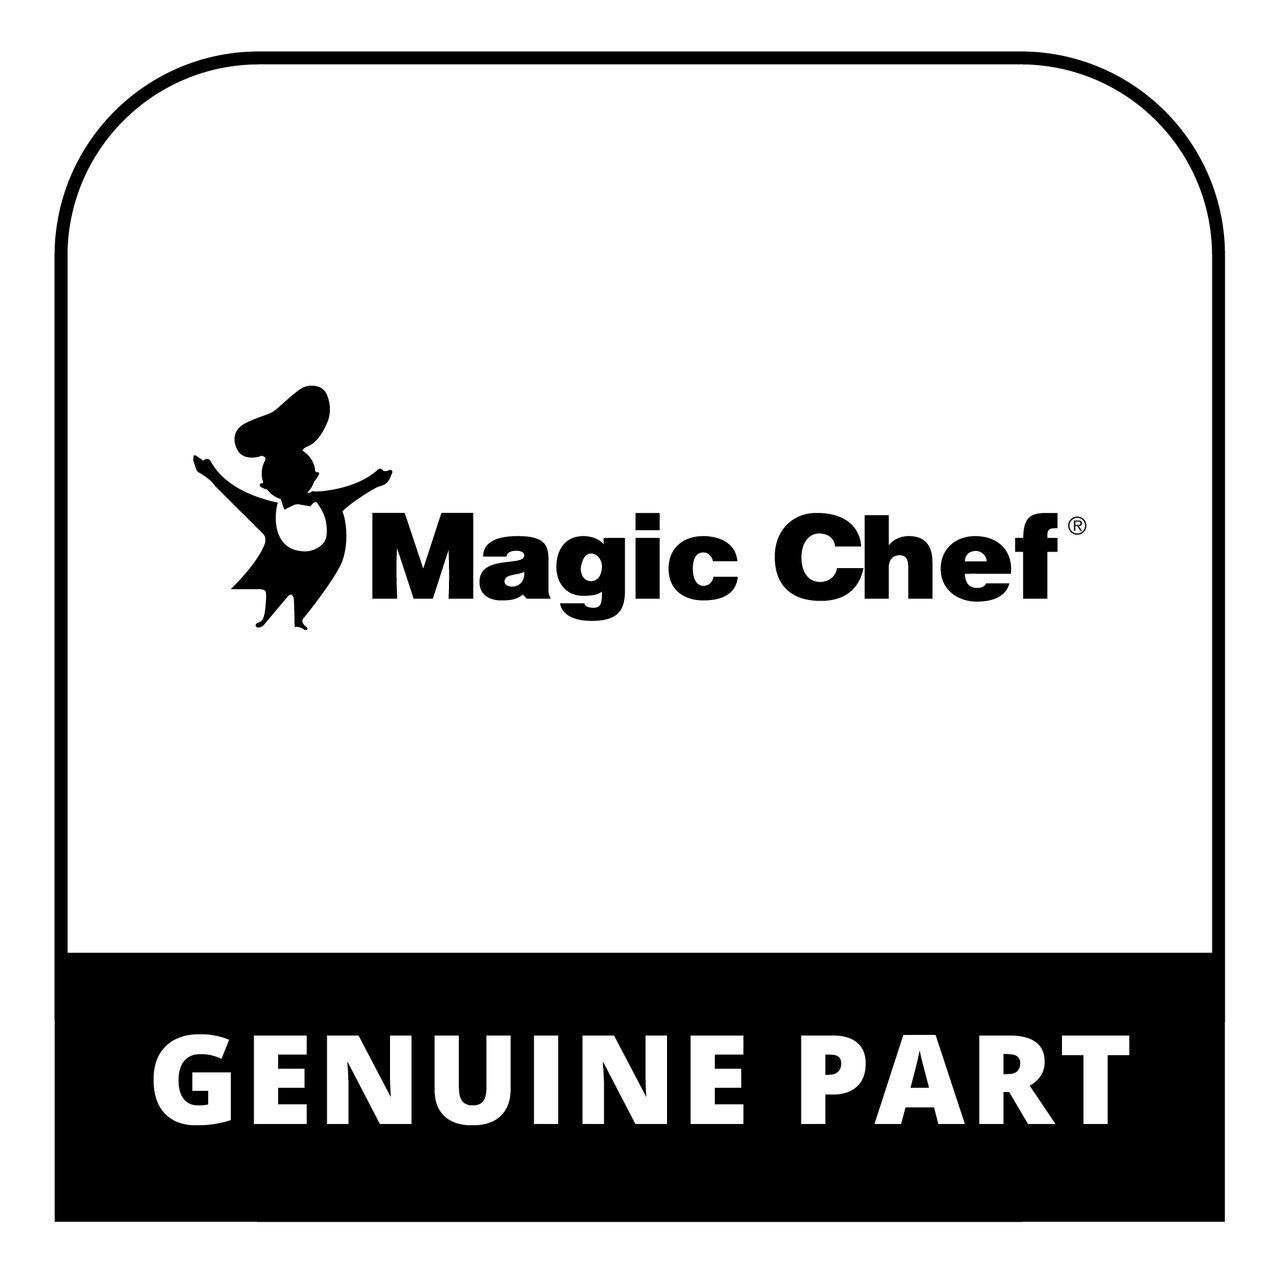 Magic Chef 7222037719 - GLASS LID (MCSMC6B) - Genuine Magic Chef Part